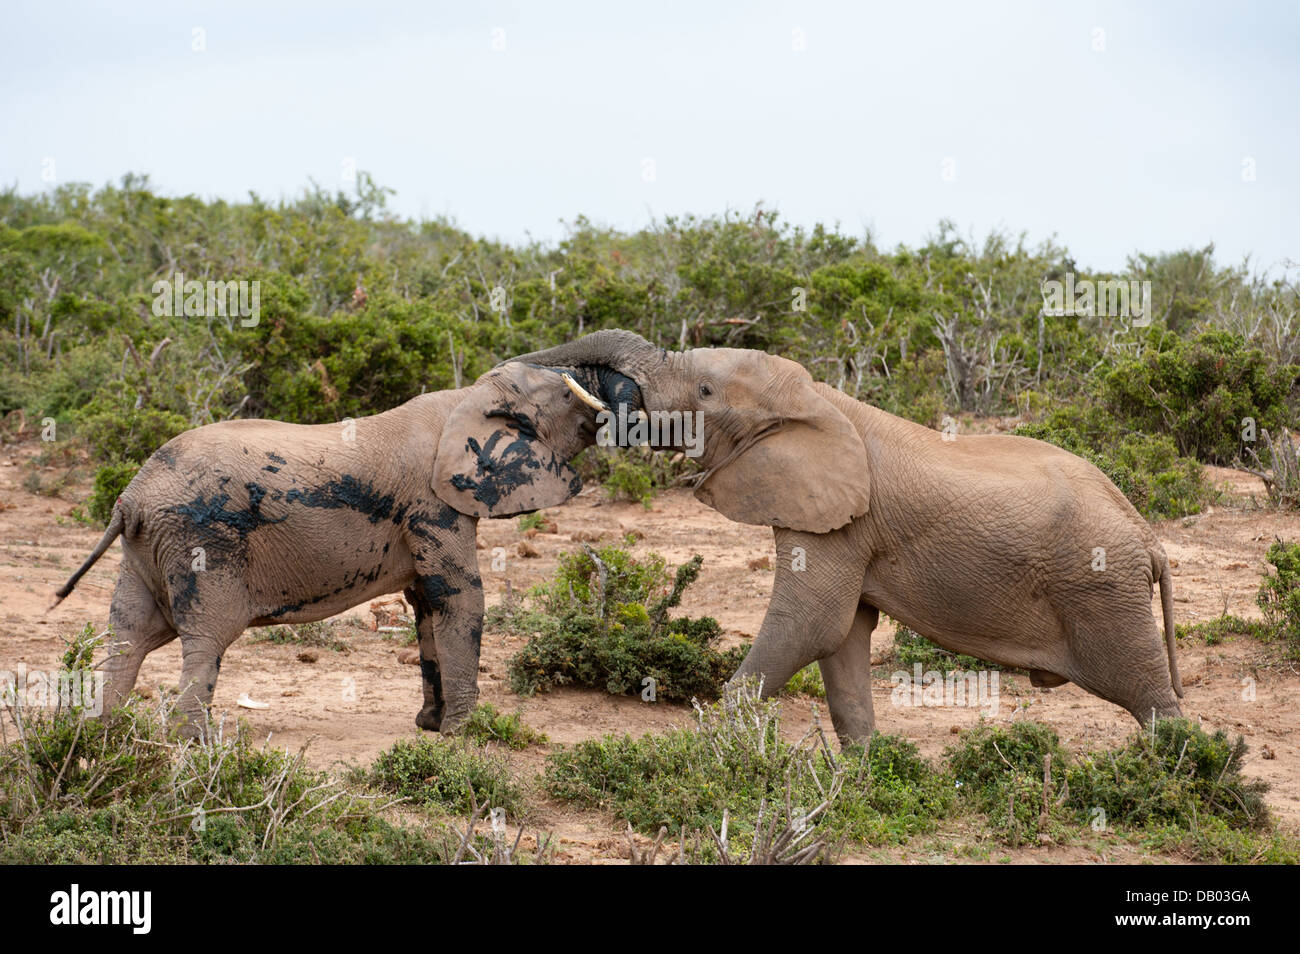 Les jeunes éléphants d'Afrique Loxodonta africana africana jouer(), l'Addo Elephant National Park, Eastern Cape, Afrique du Sud Banque D'Images